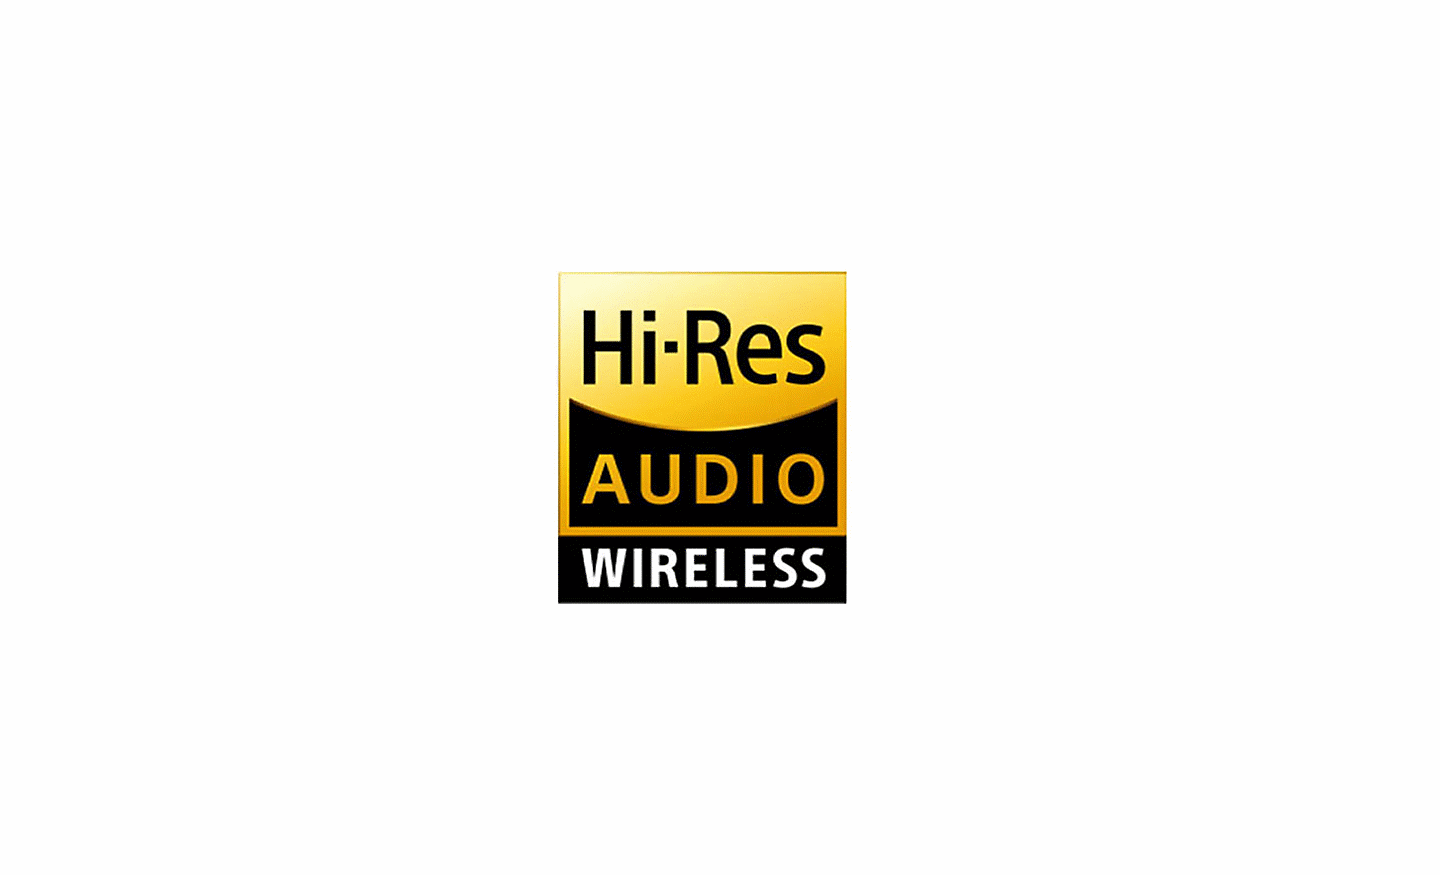 Hi-Res Audio Wireless 標誌圖